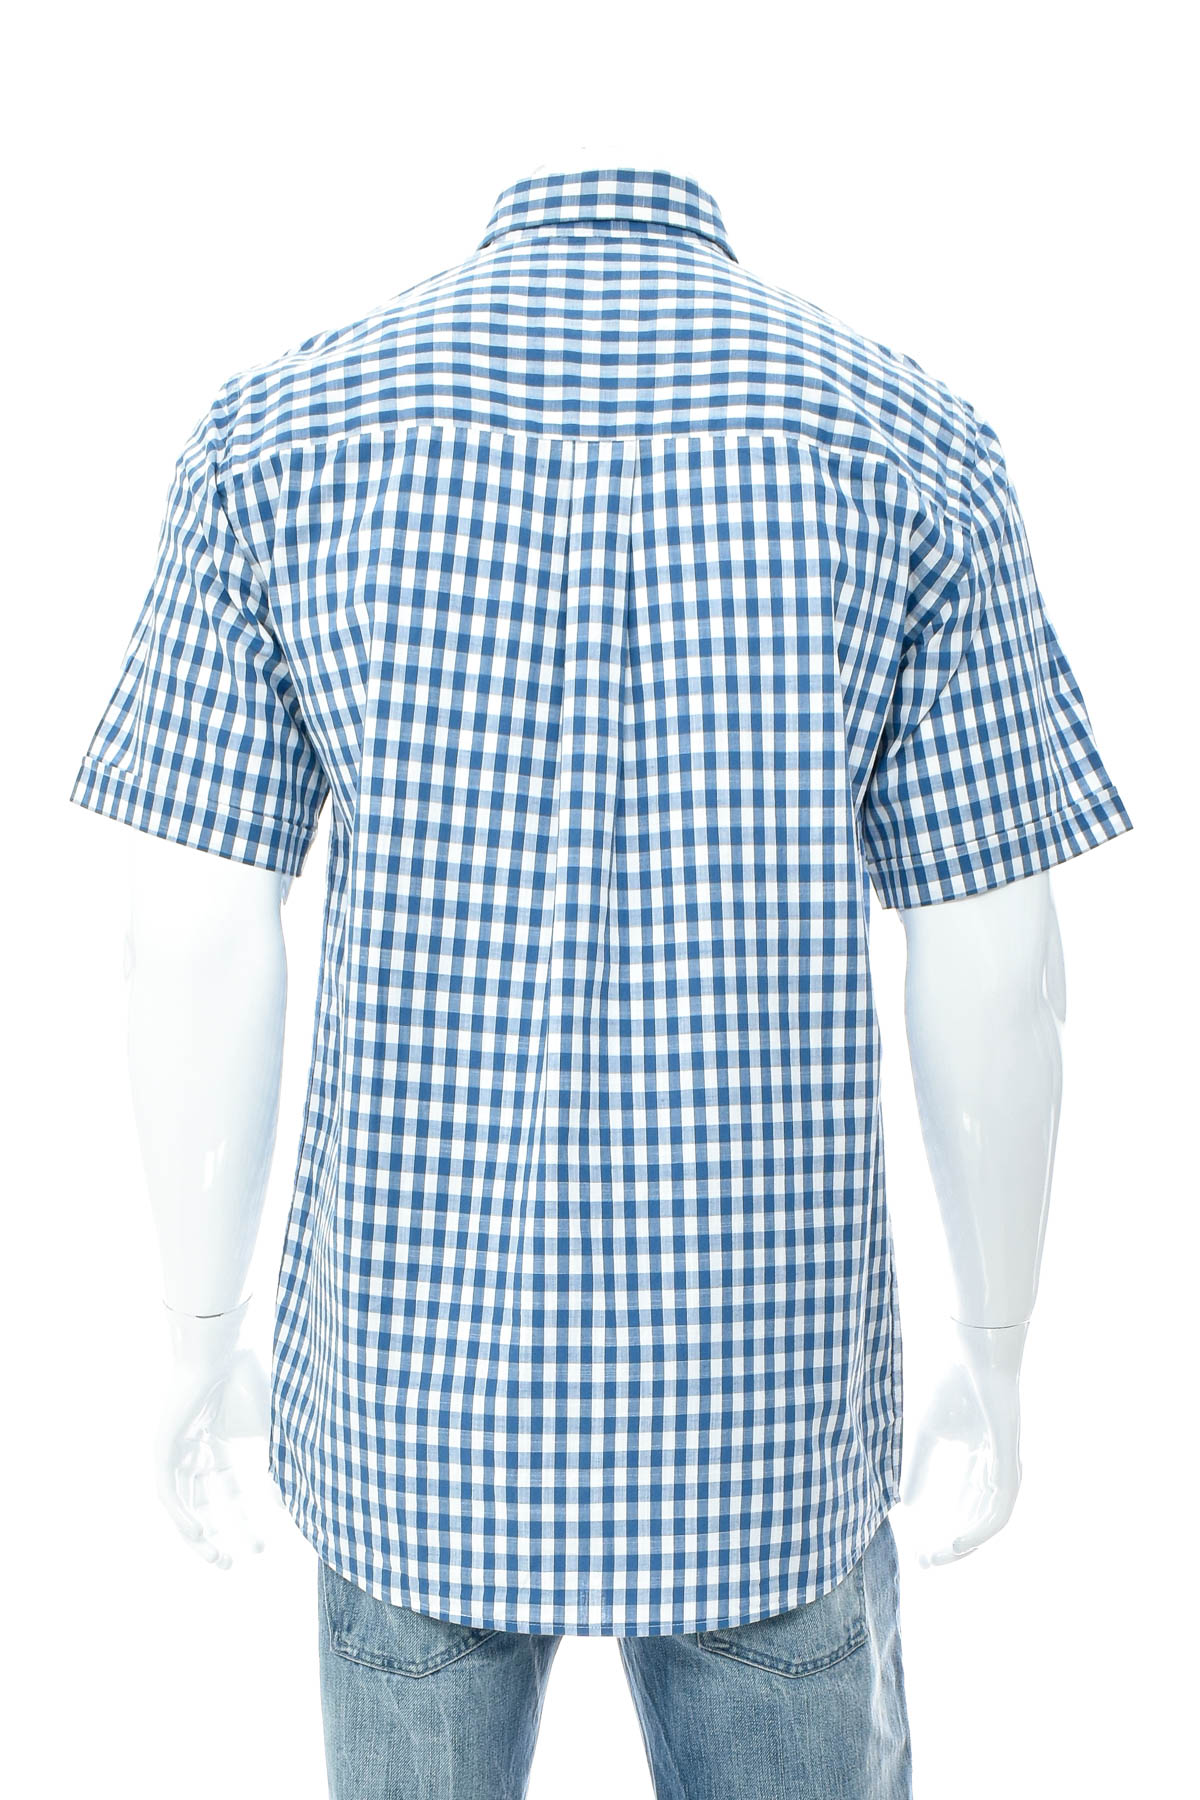 Ανδρικό πουκάμισο - A.W. Dunmore - 1